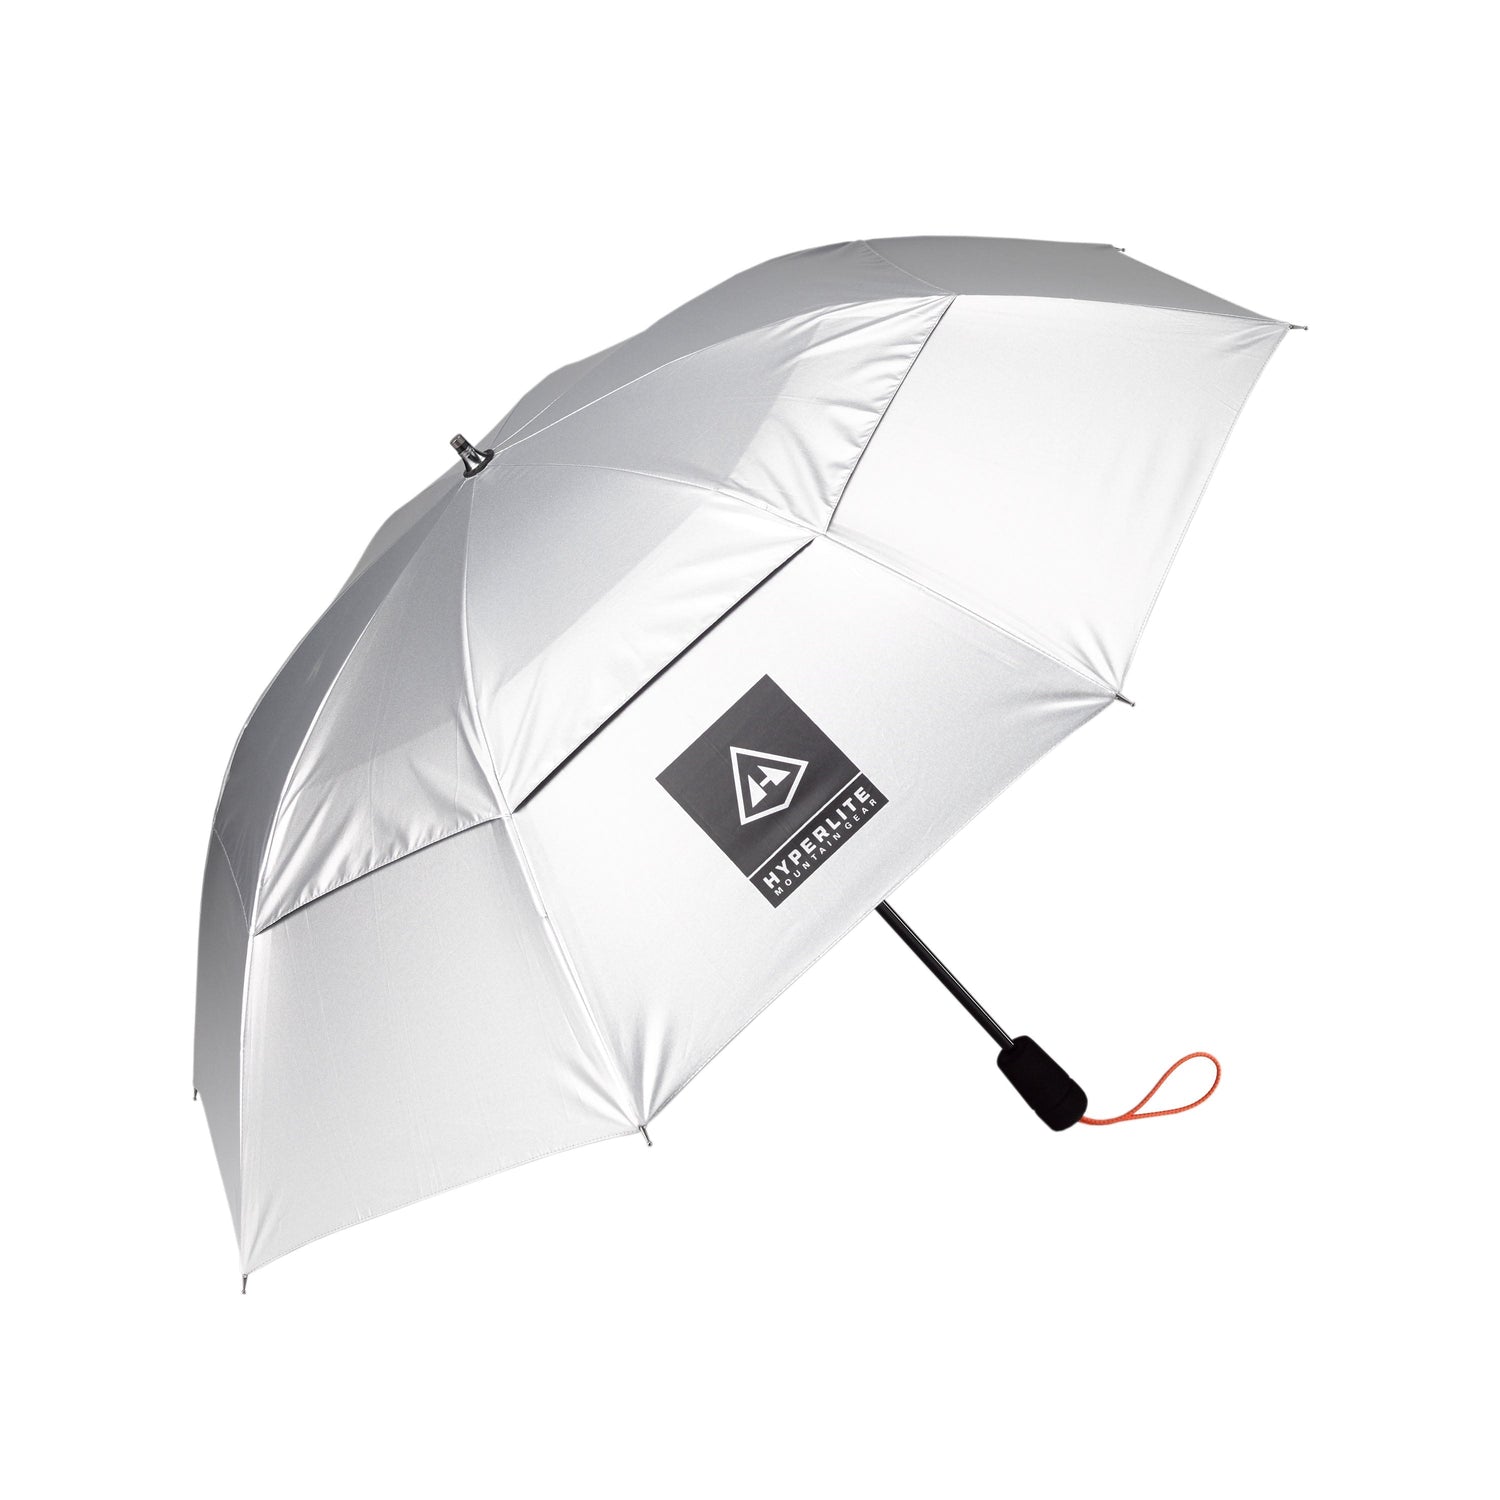 Hyperlite Mountain Gear Essential Umbrella